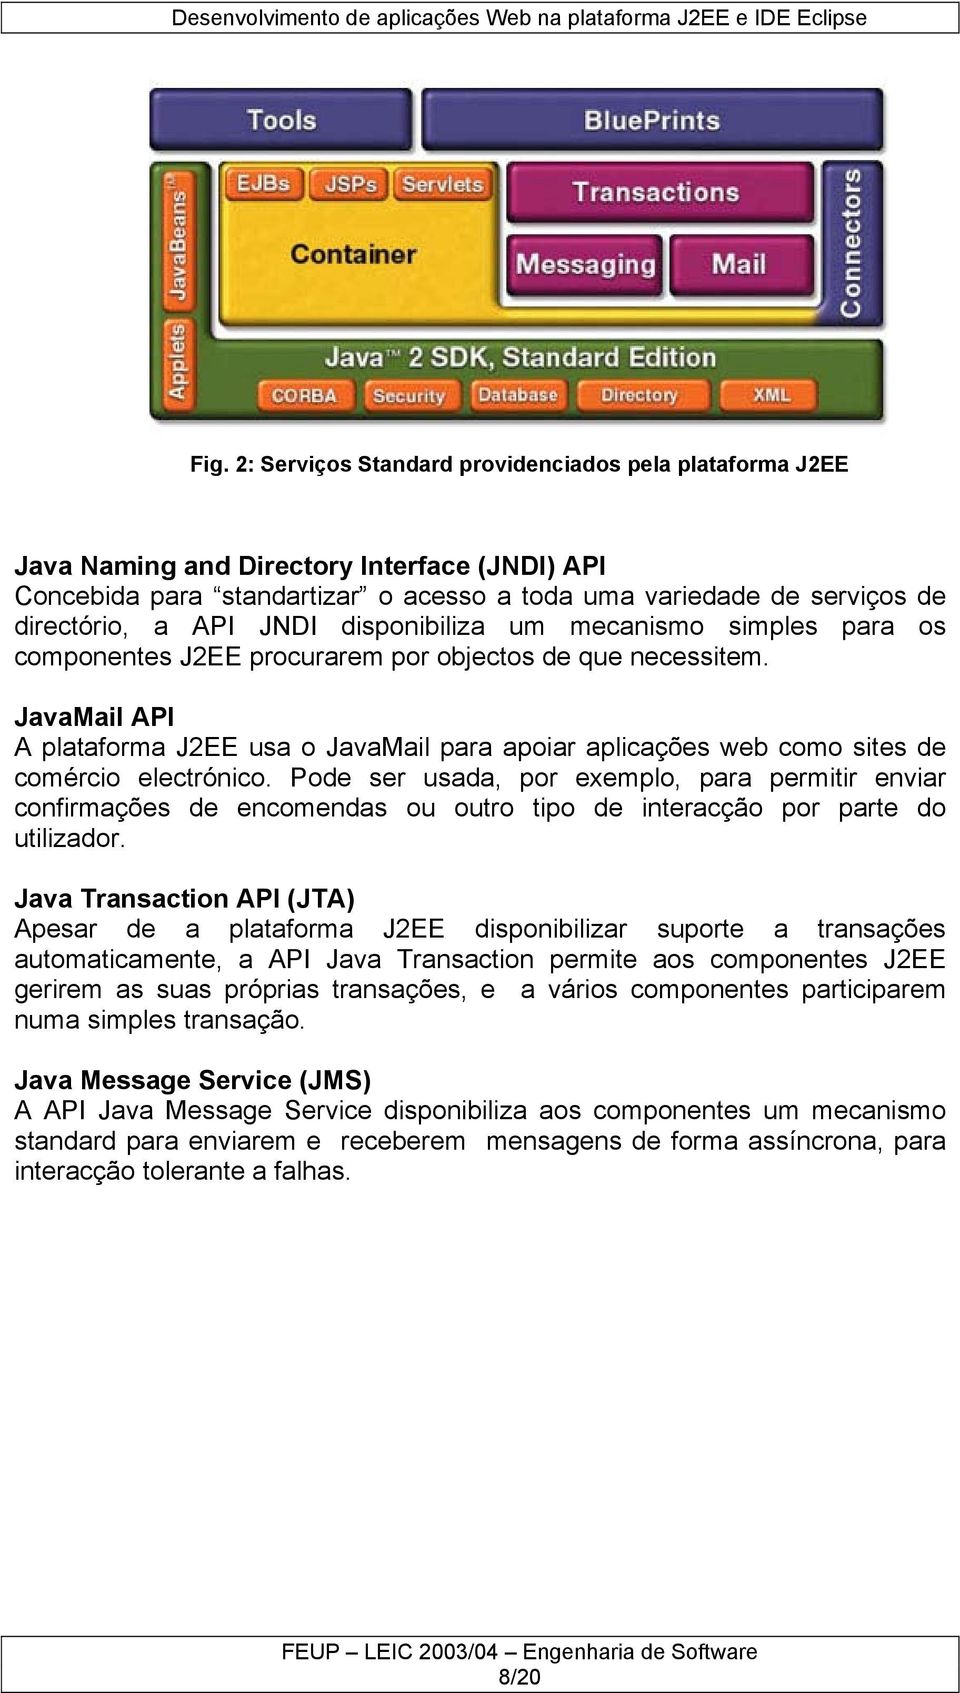 JavaMail API A plataforma J2EE usa o JavaMail para apoiar aplicações web como sites de comércio electrónico.